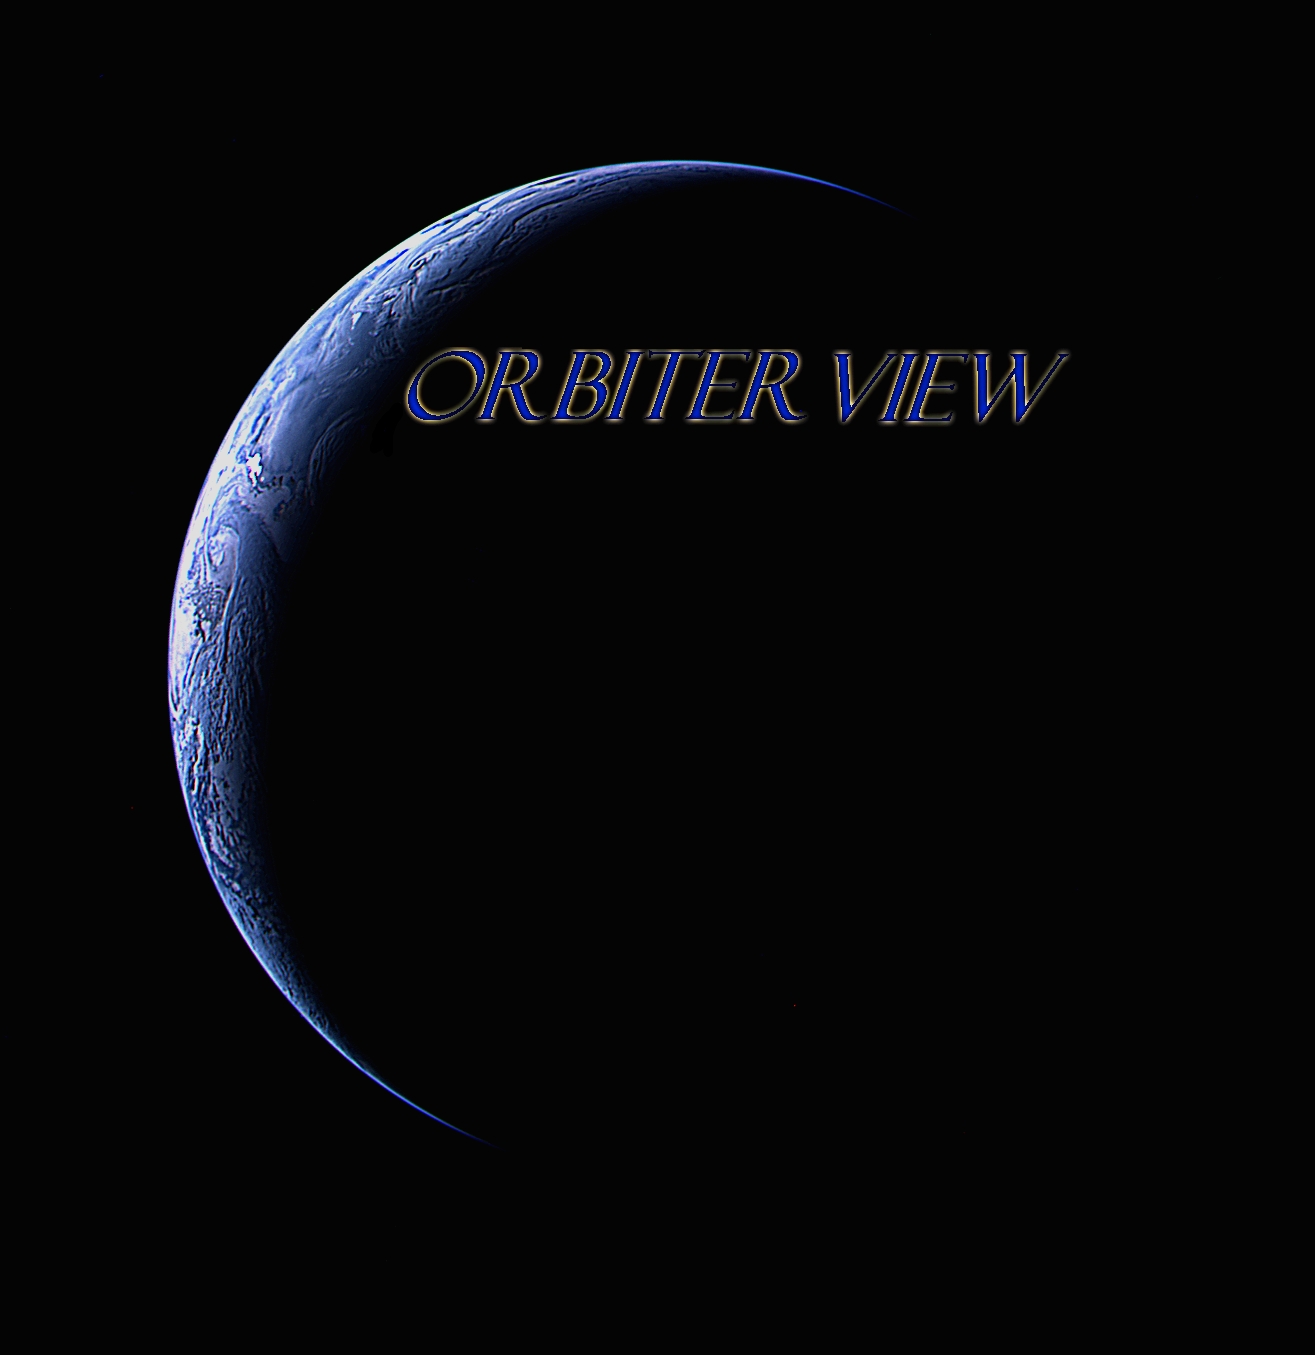 Orbiterviewlogodefault.jpg